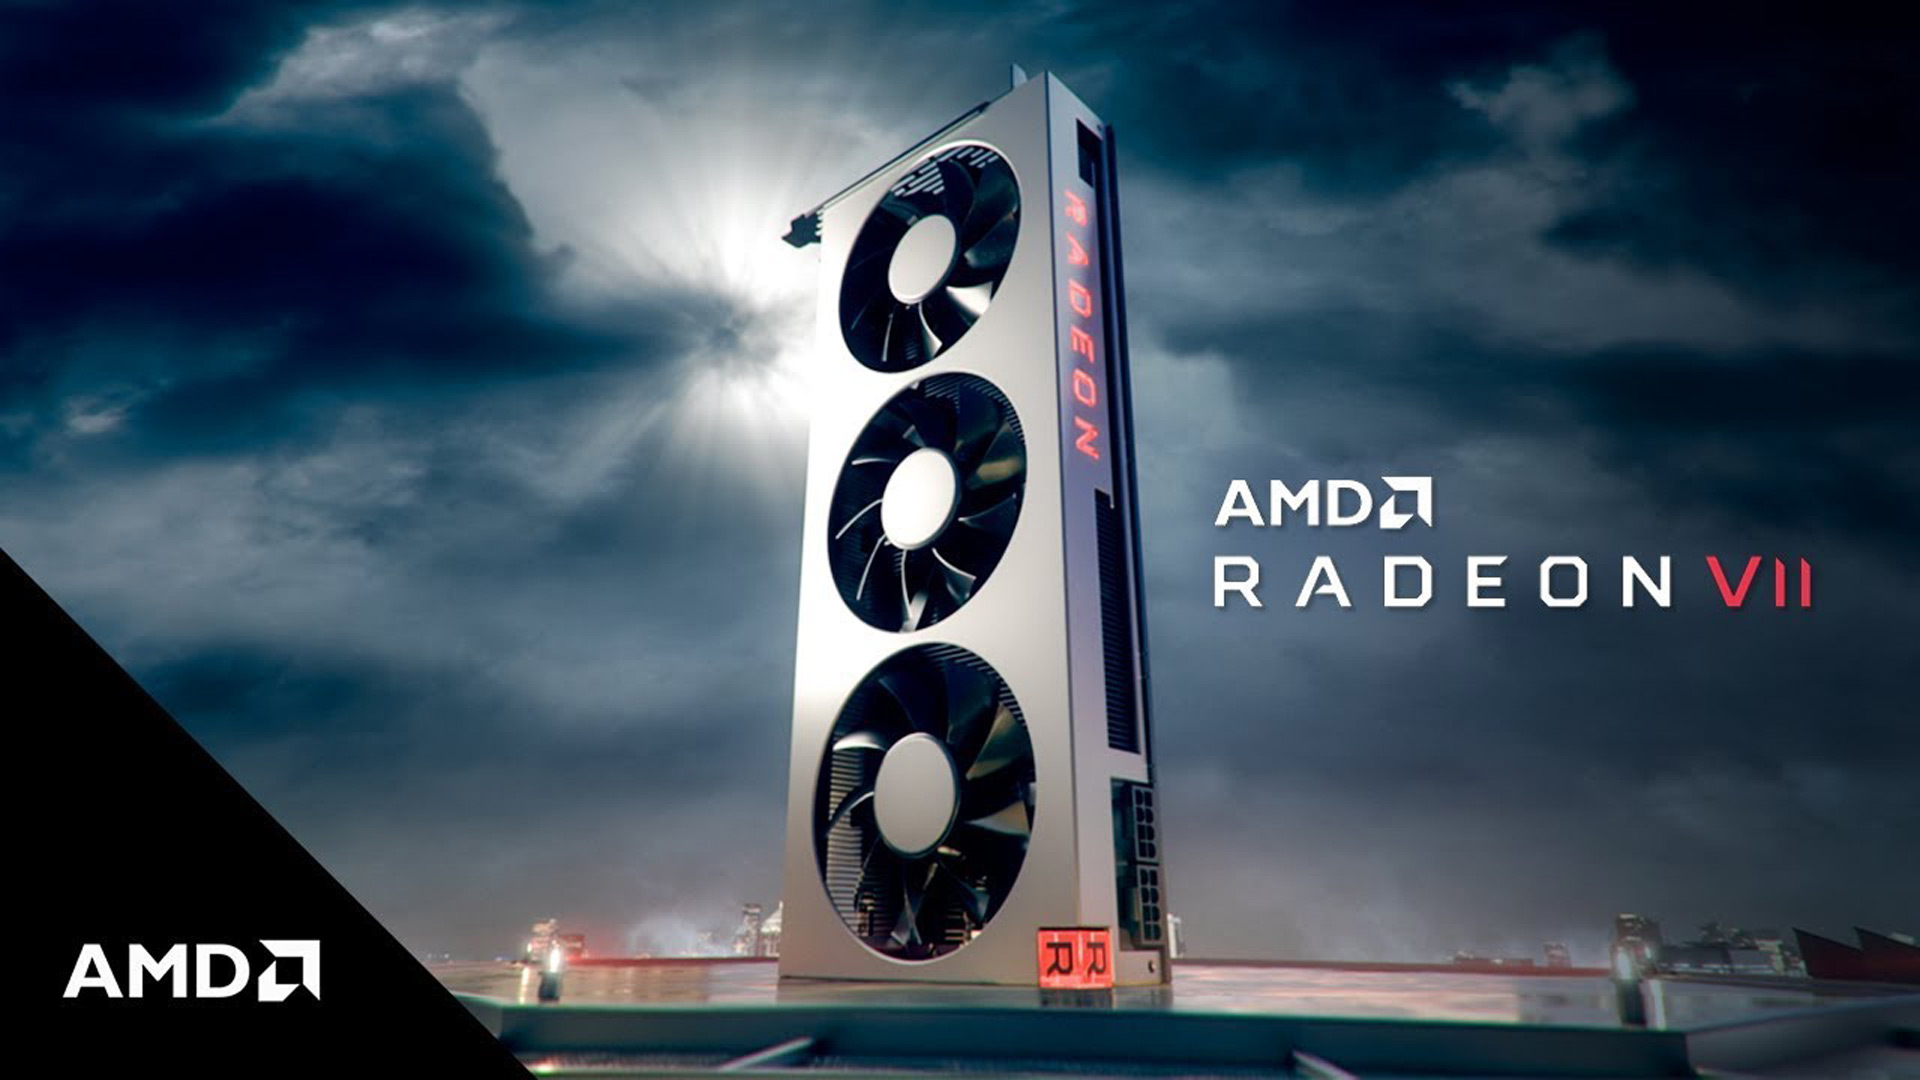 AMD Radeon VII sadece 5000 adet üretildi, özelleştirilmiş versiyon olmayacak